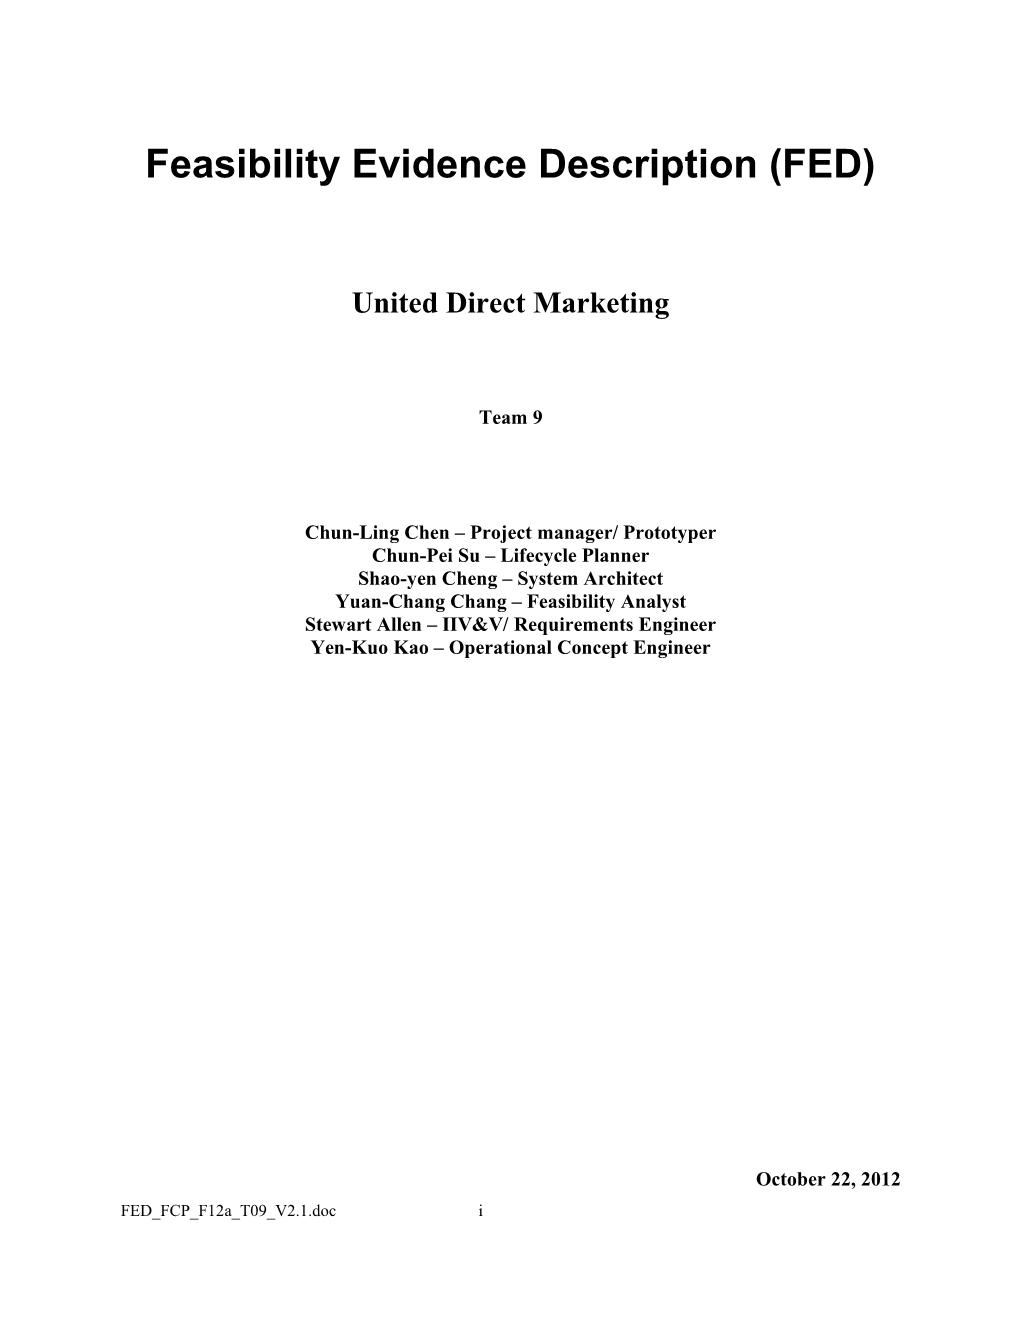 Feasibility Evidencedescription (FED)